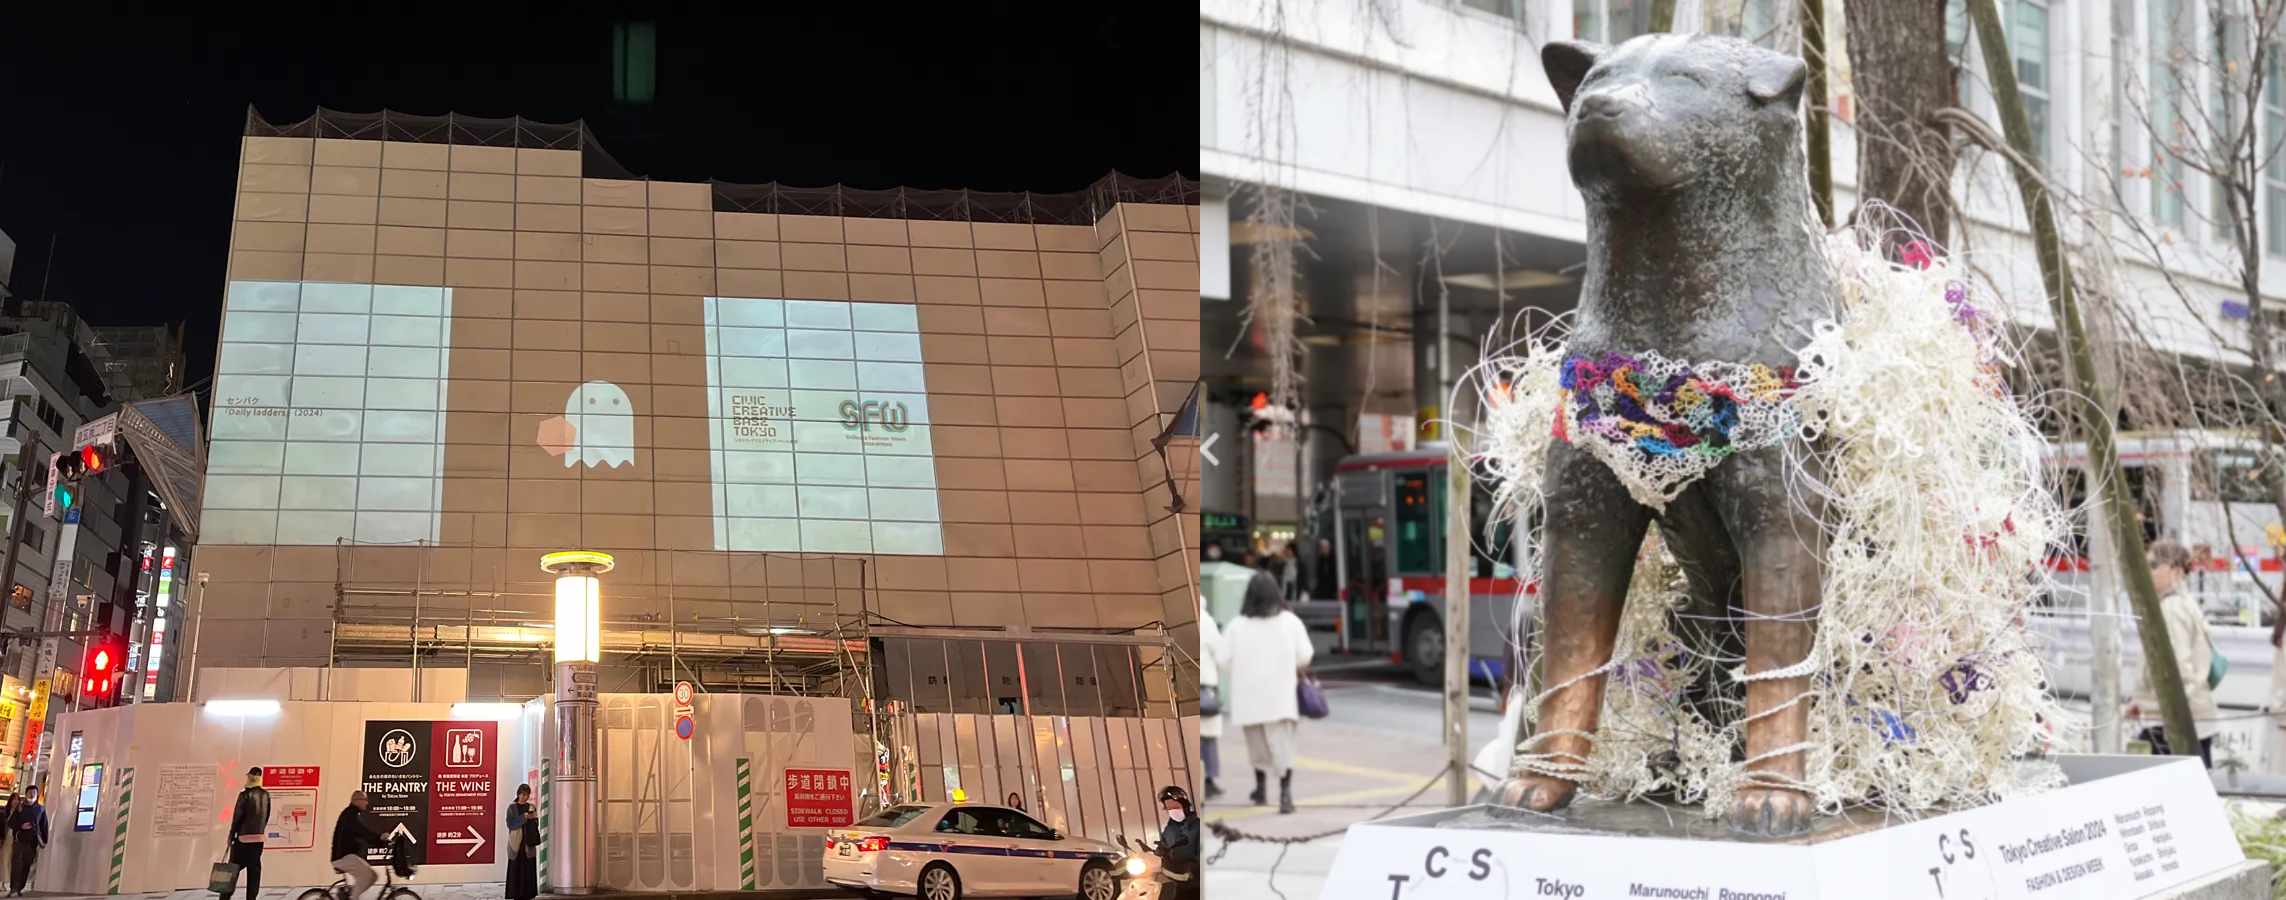 지난 3월 15일 '시부야 패션 위크'를 맞이해서는 그를 위한 광고벽, 쇼장의 일부로 사용되기도 했어요.() 더불어 동원된 하치코 동상.nai